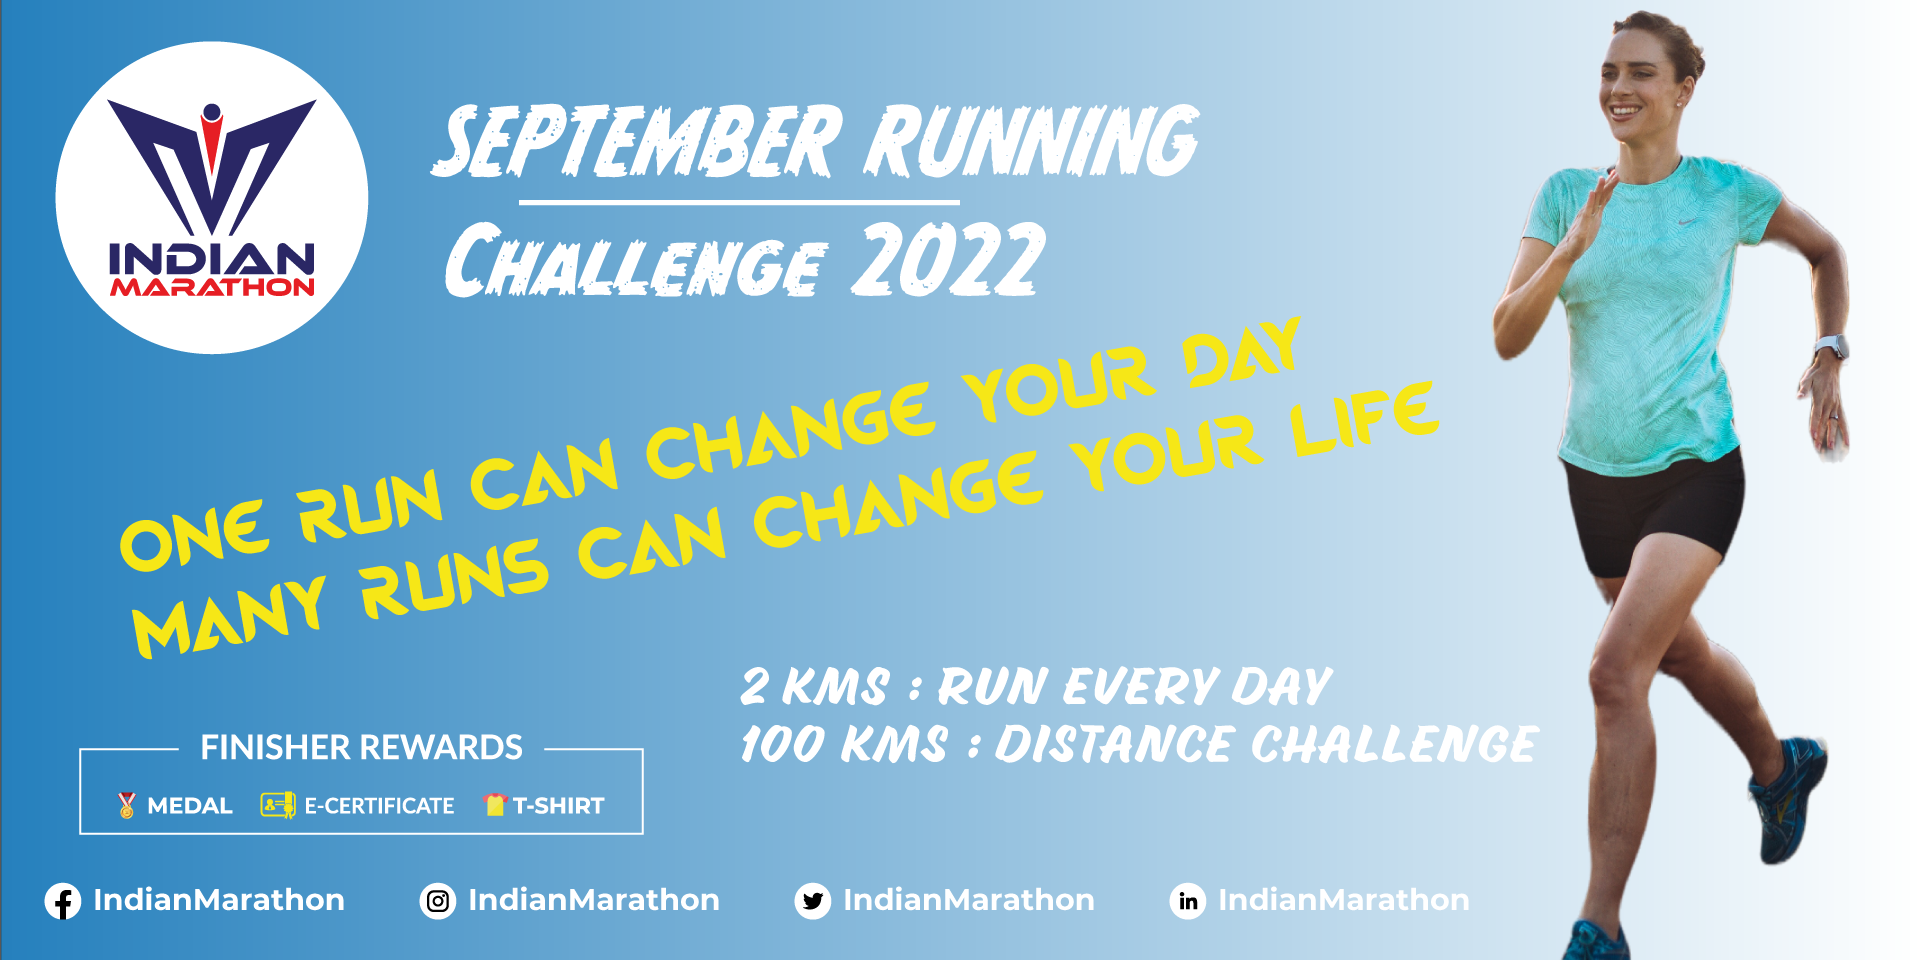 September Running Challenge 2022 image